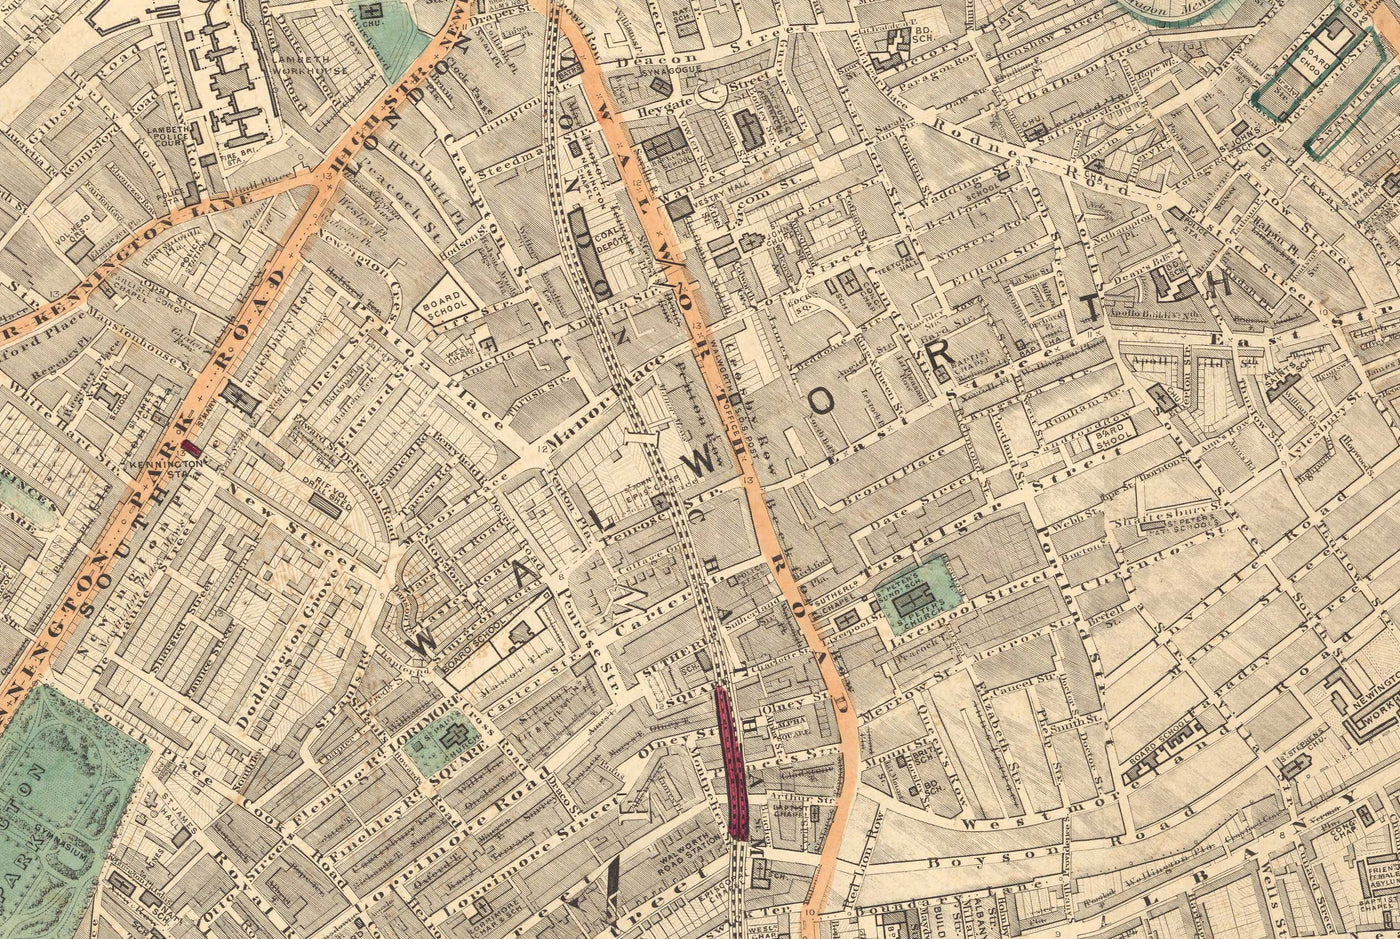 Antiguo mapa en color del sur de Londres en 1891 - Camberwell, Peckham, Walworth, Nunhead, Old Kent Road - SE5, SE17, SE15, SE1, SE16